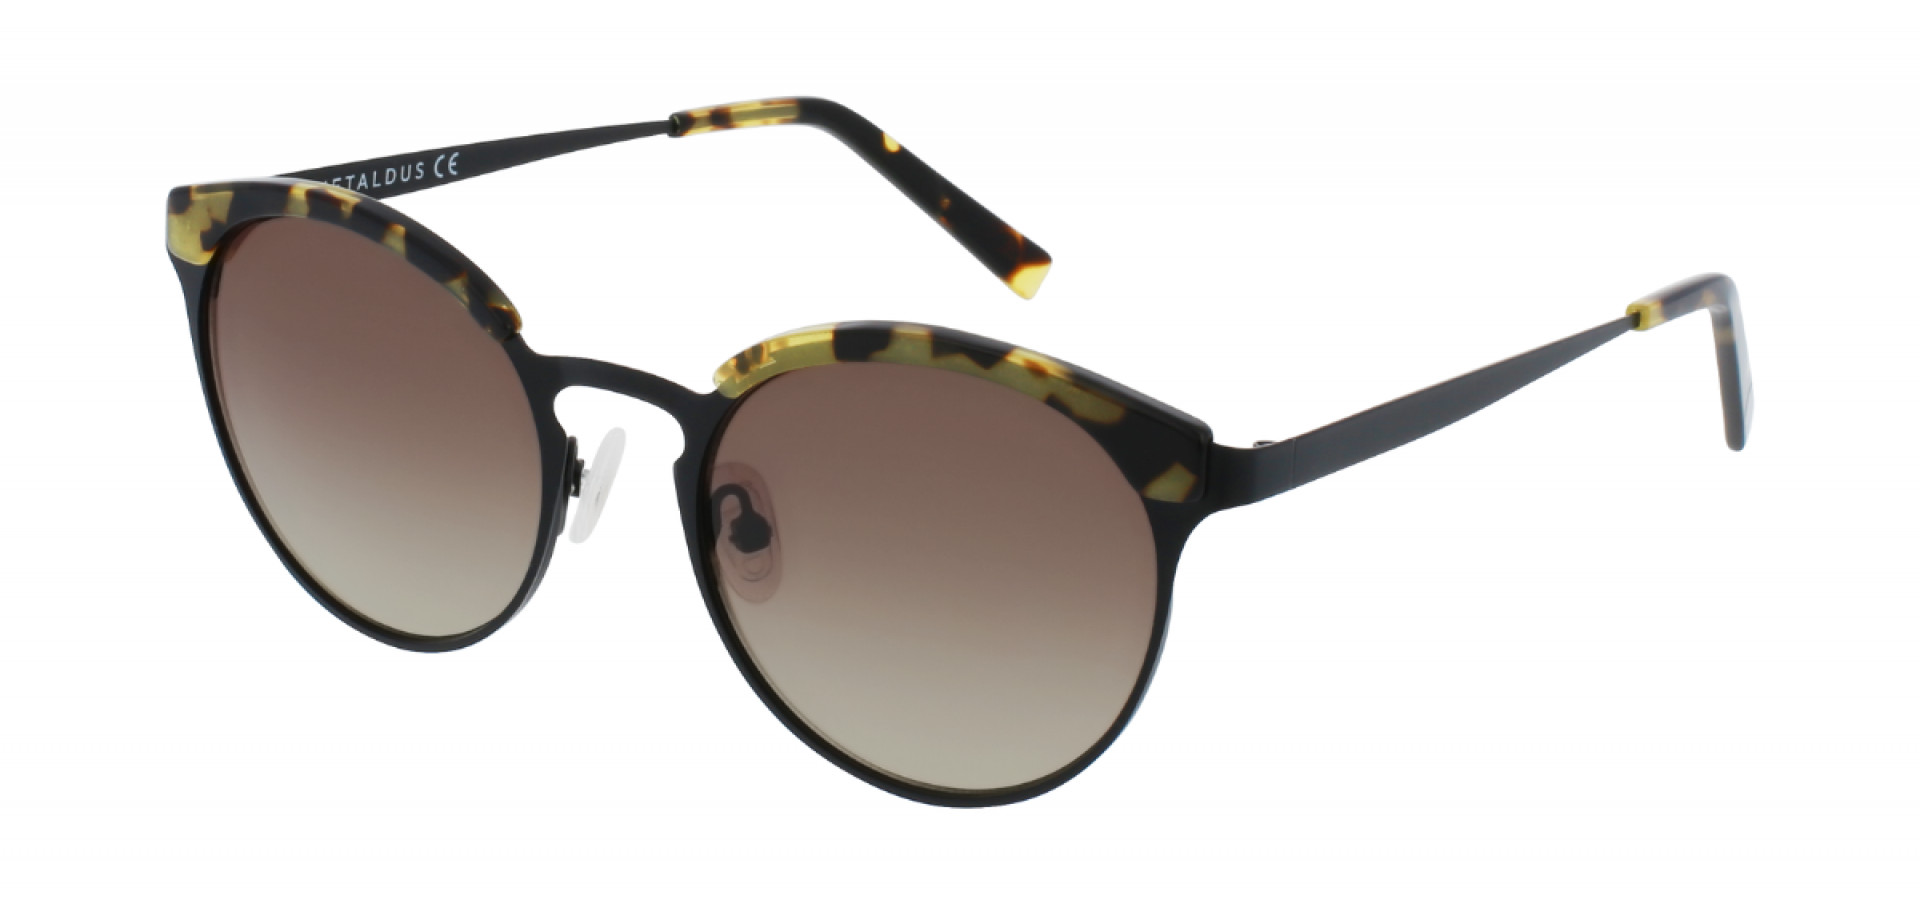 Sunčane naočale Ghetaldus GHS-W123-1: Boja: Black/Black Havana, Veličina: 50-18-140, Spol: ženske, Materijal: metal, Vrsta leće: nepolarizirane